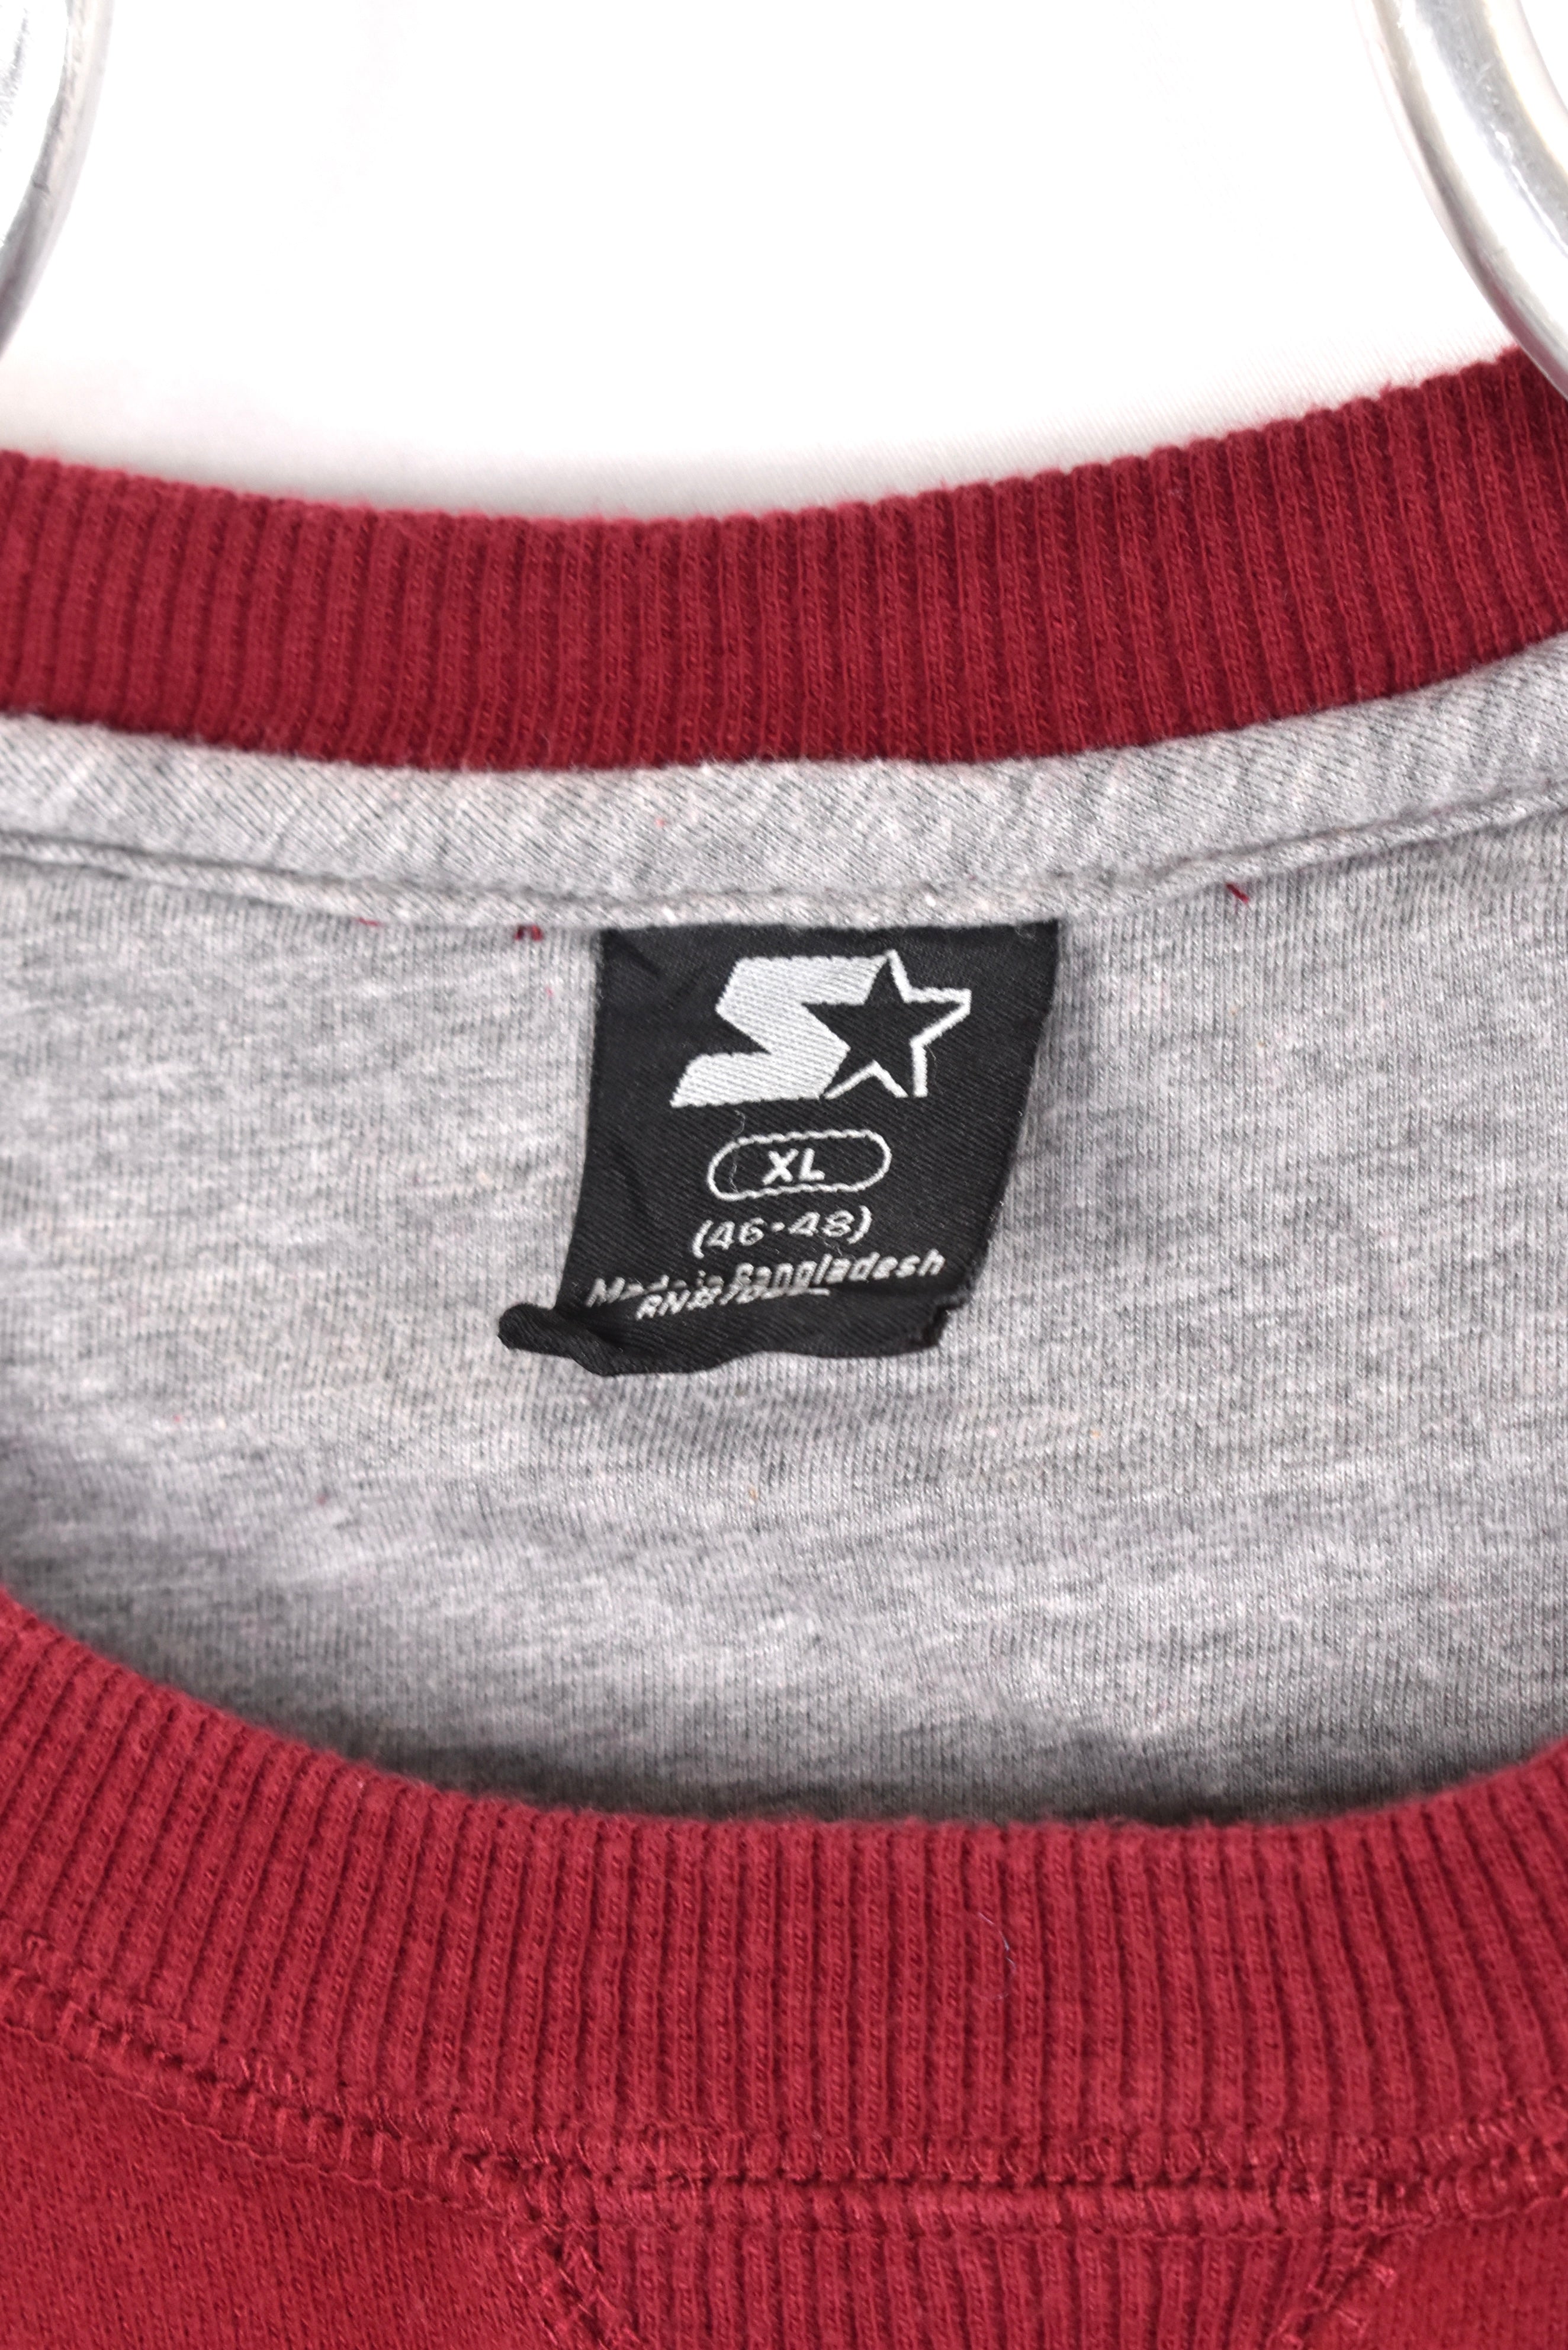 Vintage Starter sweatshirt, burgundy embroidered crewneck - AU XL STARTER